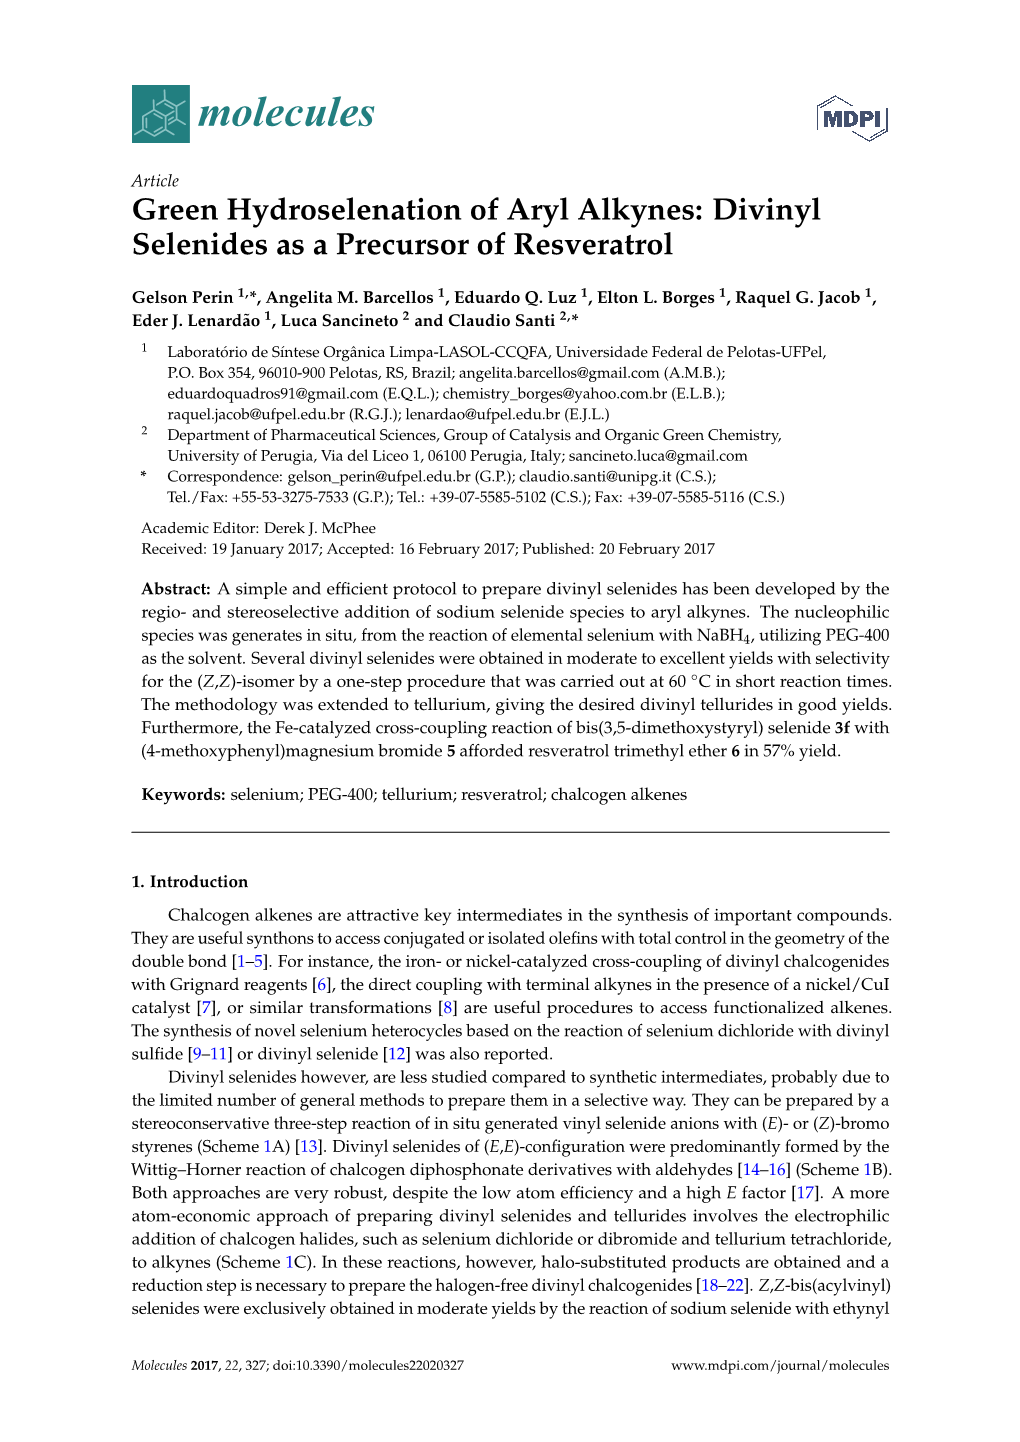 Divinyl Selenides As a Precursor of Resveratrol